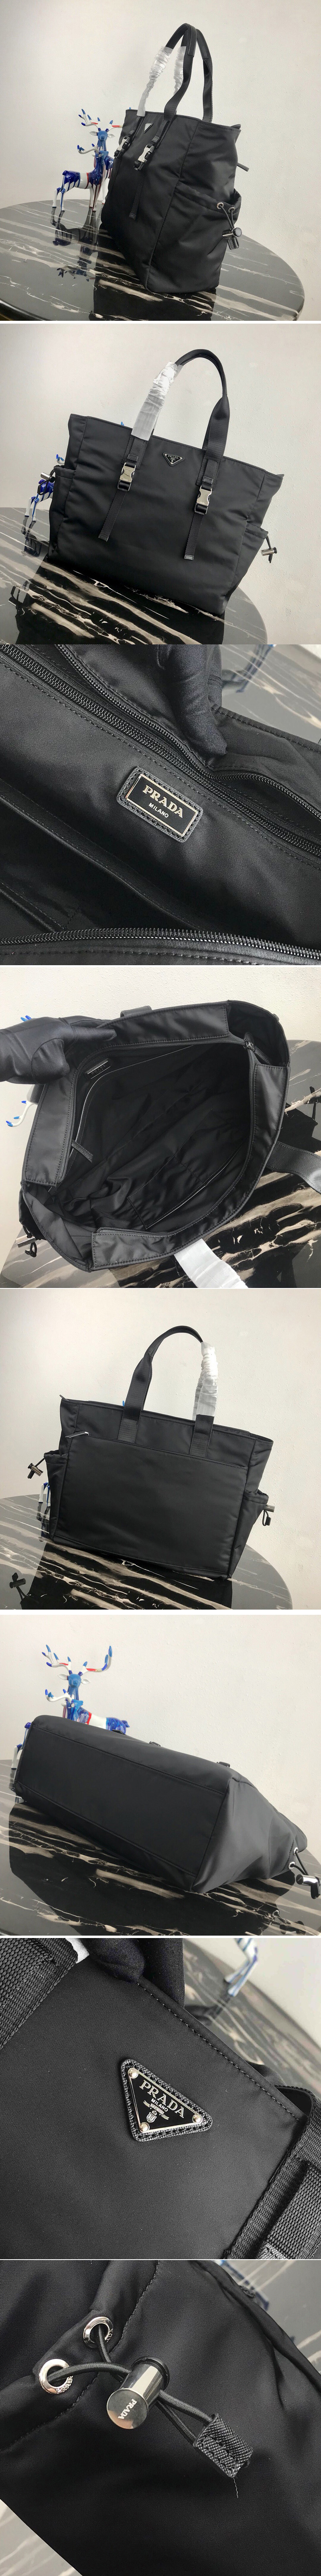 Replica Prada Bags